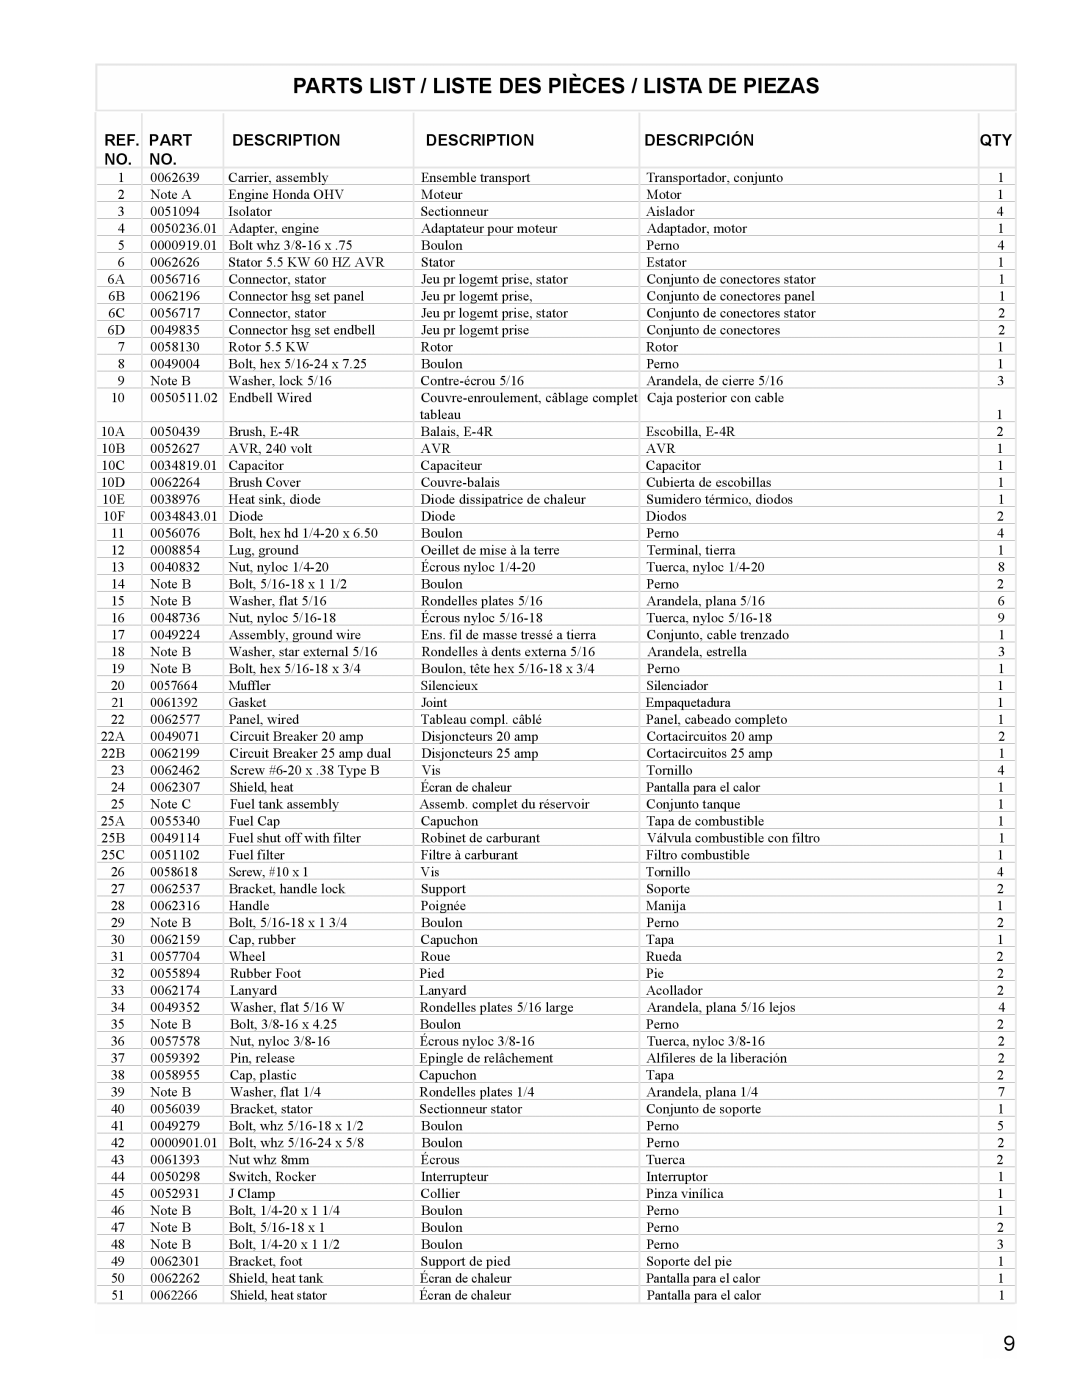 Powermate PC0495503 manual Parts List / Liste Des Pièces / Lista De Piezas, Description, Descripción 